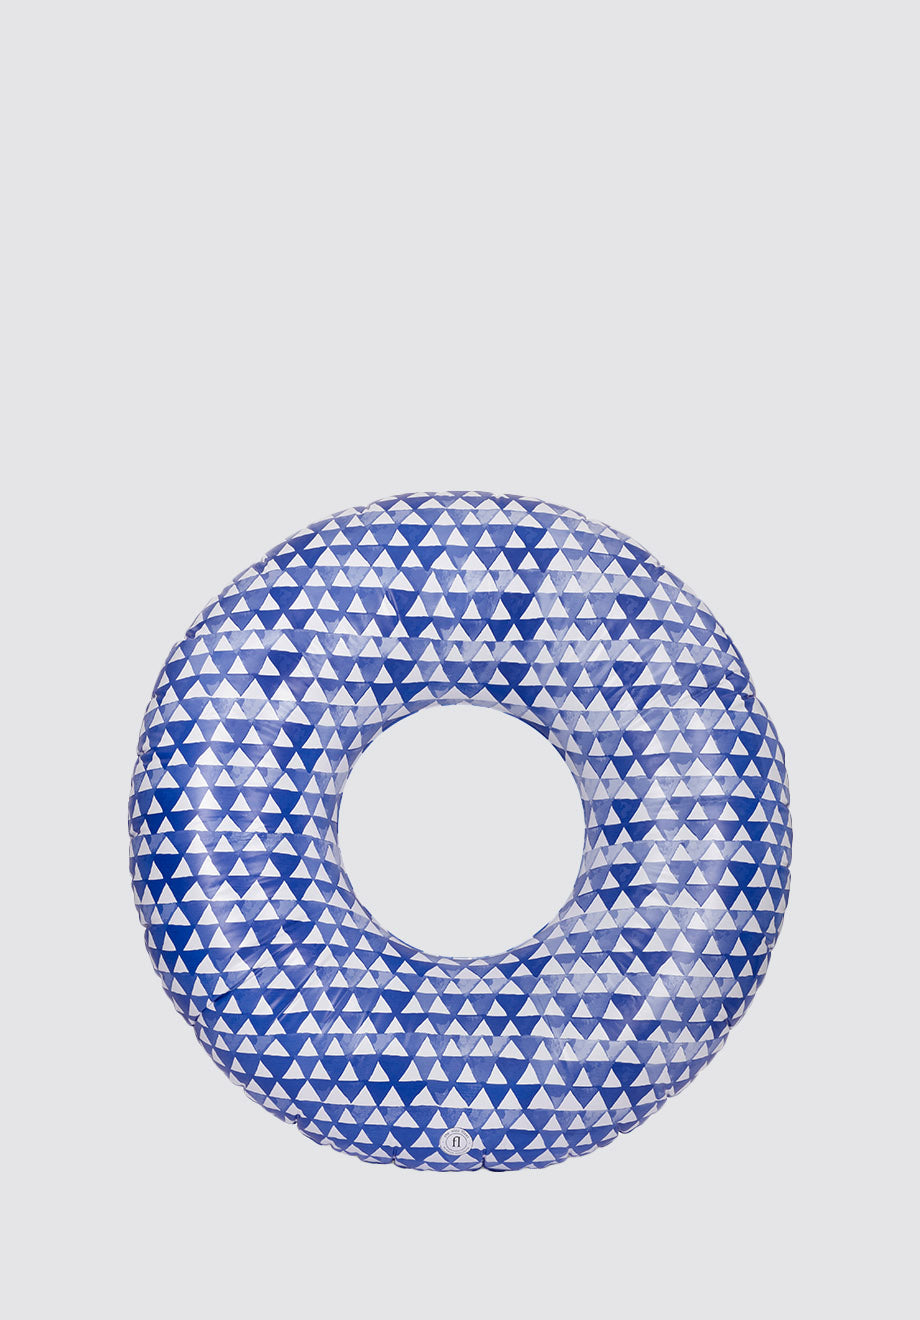 XL Inflatable Swim Ring | Tulum